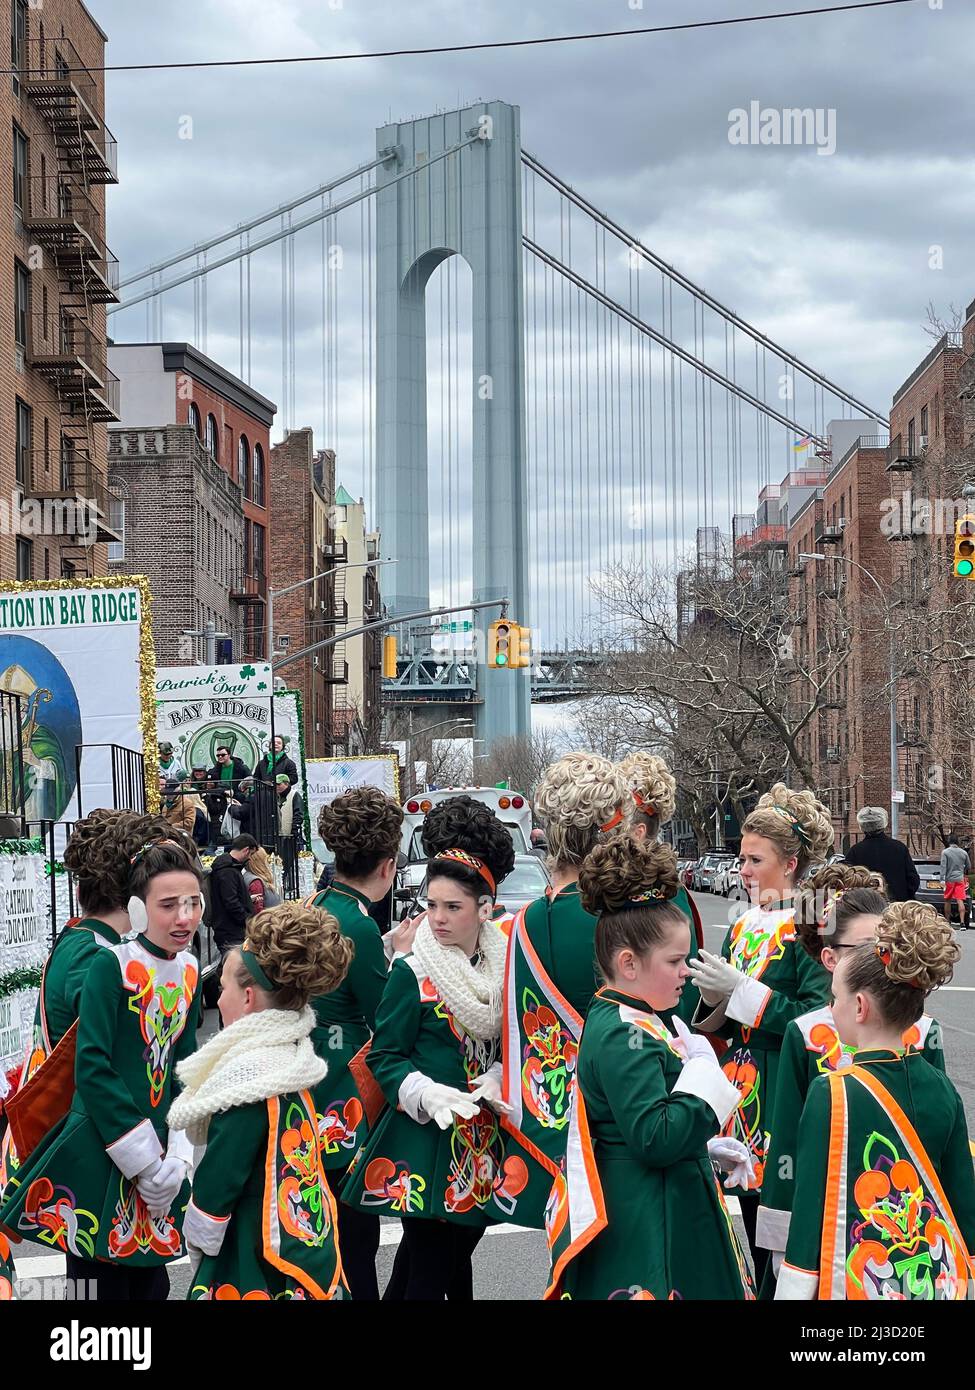 Teenager-Mädchen, Mitglieder einer irischen Tanzschule, die sich auf den marsch vorbereiten und bei der Saint Patrick's Day Parade in Bay Ridge, Brooklyn, auftreten. Verrazano Bridge im Hintergrund geht es zwischen Brooklyn und Staten Island in New York City. Stockfoto